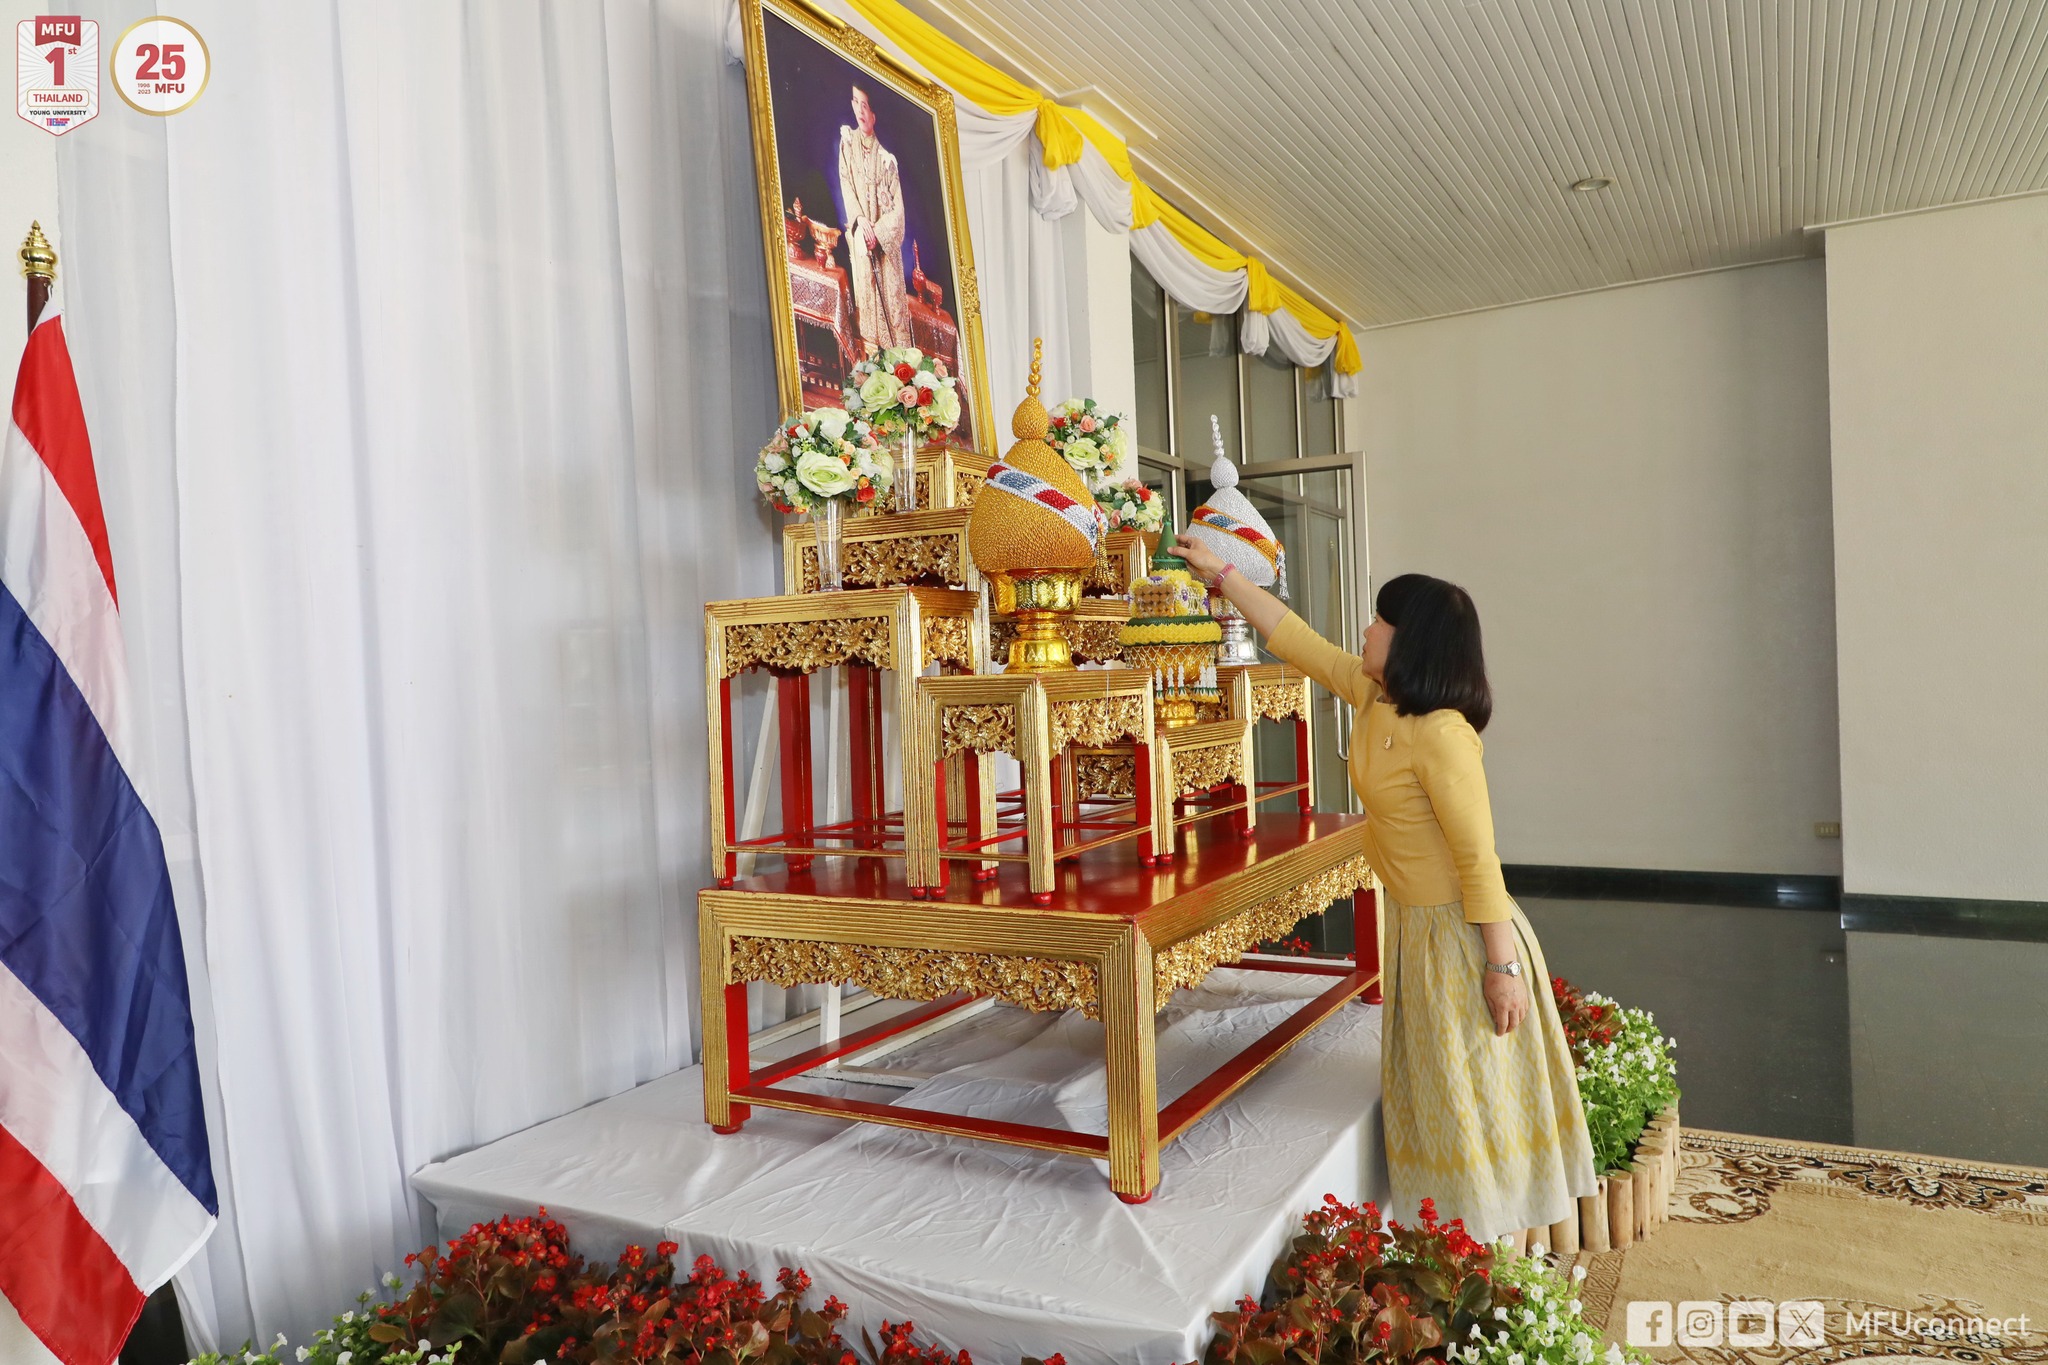 มฟล. จัดกิจกรรม Big Cleaning Day เพื่อเฉลิมพระเกียรติพระบาทสมเด็จพระเจ้าอยู่หัวที่ทรงมีพระกรุณาธิคุณต่อปวงชนชาวไทยอย่างหาที่สุดมิได้